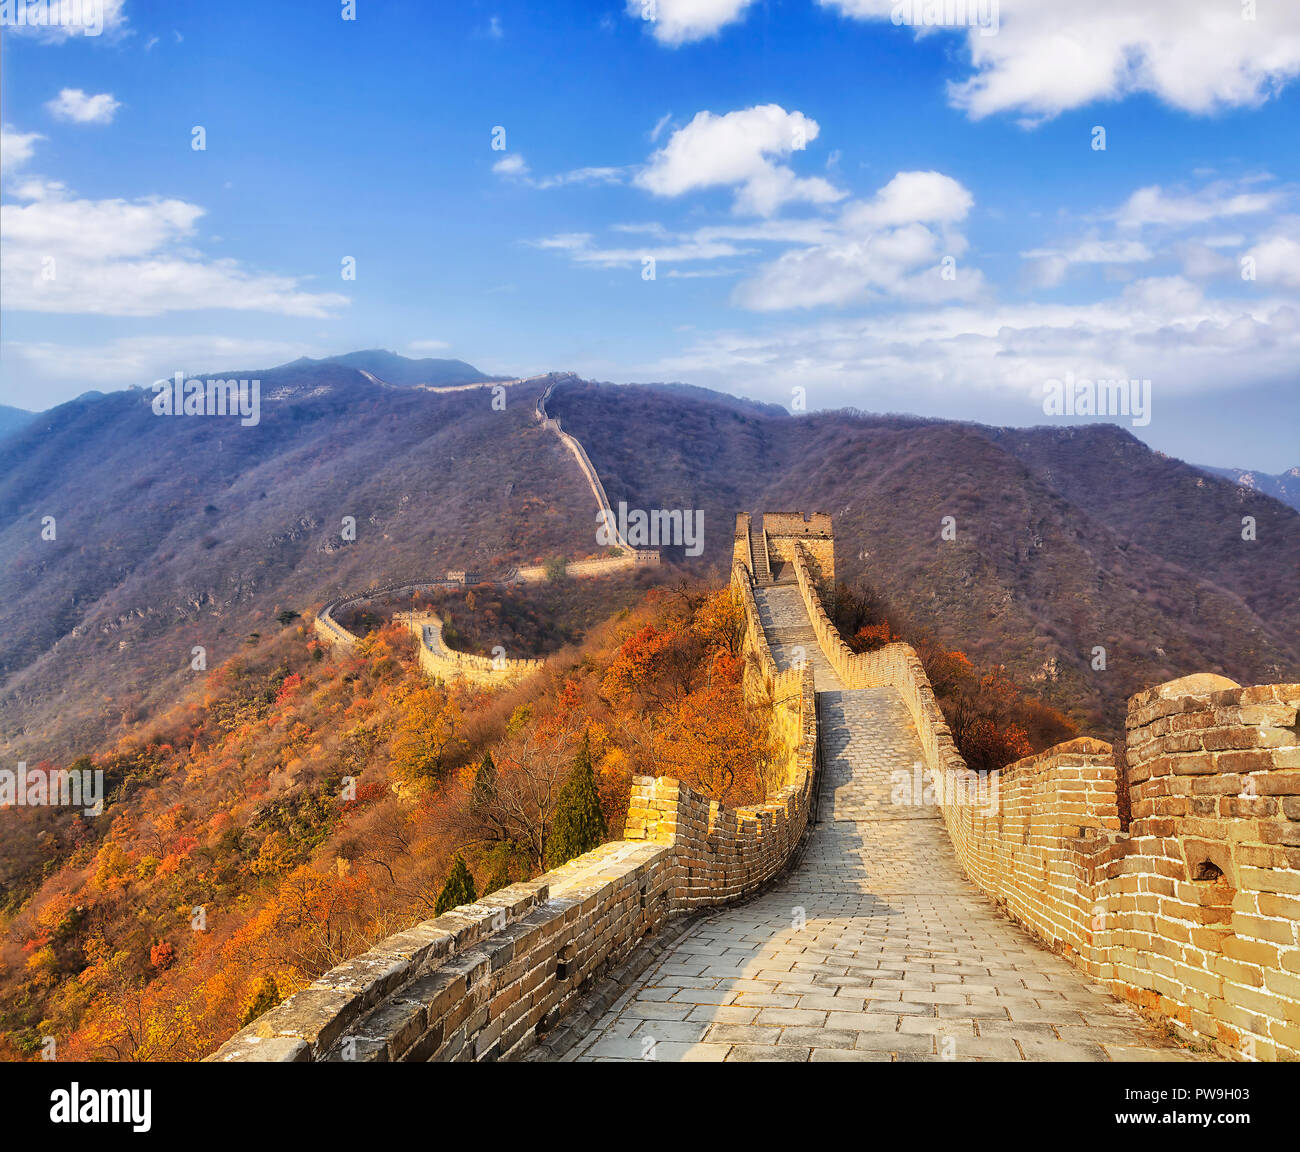 La grande muraille de Chine - noboy promenades le long passage au sommet de l'échelle de la section du mur élevé dans les montagnes de Mutianyu le long d'une journée d'automne. Longue chaîne de th Banque D'Images